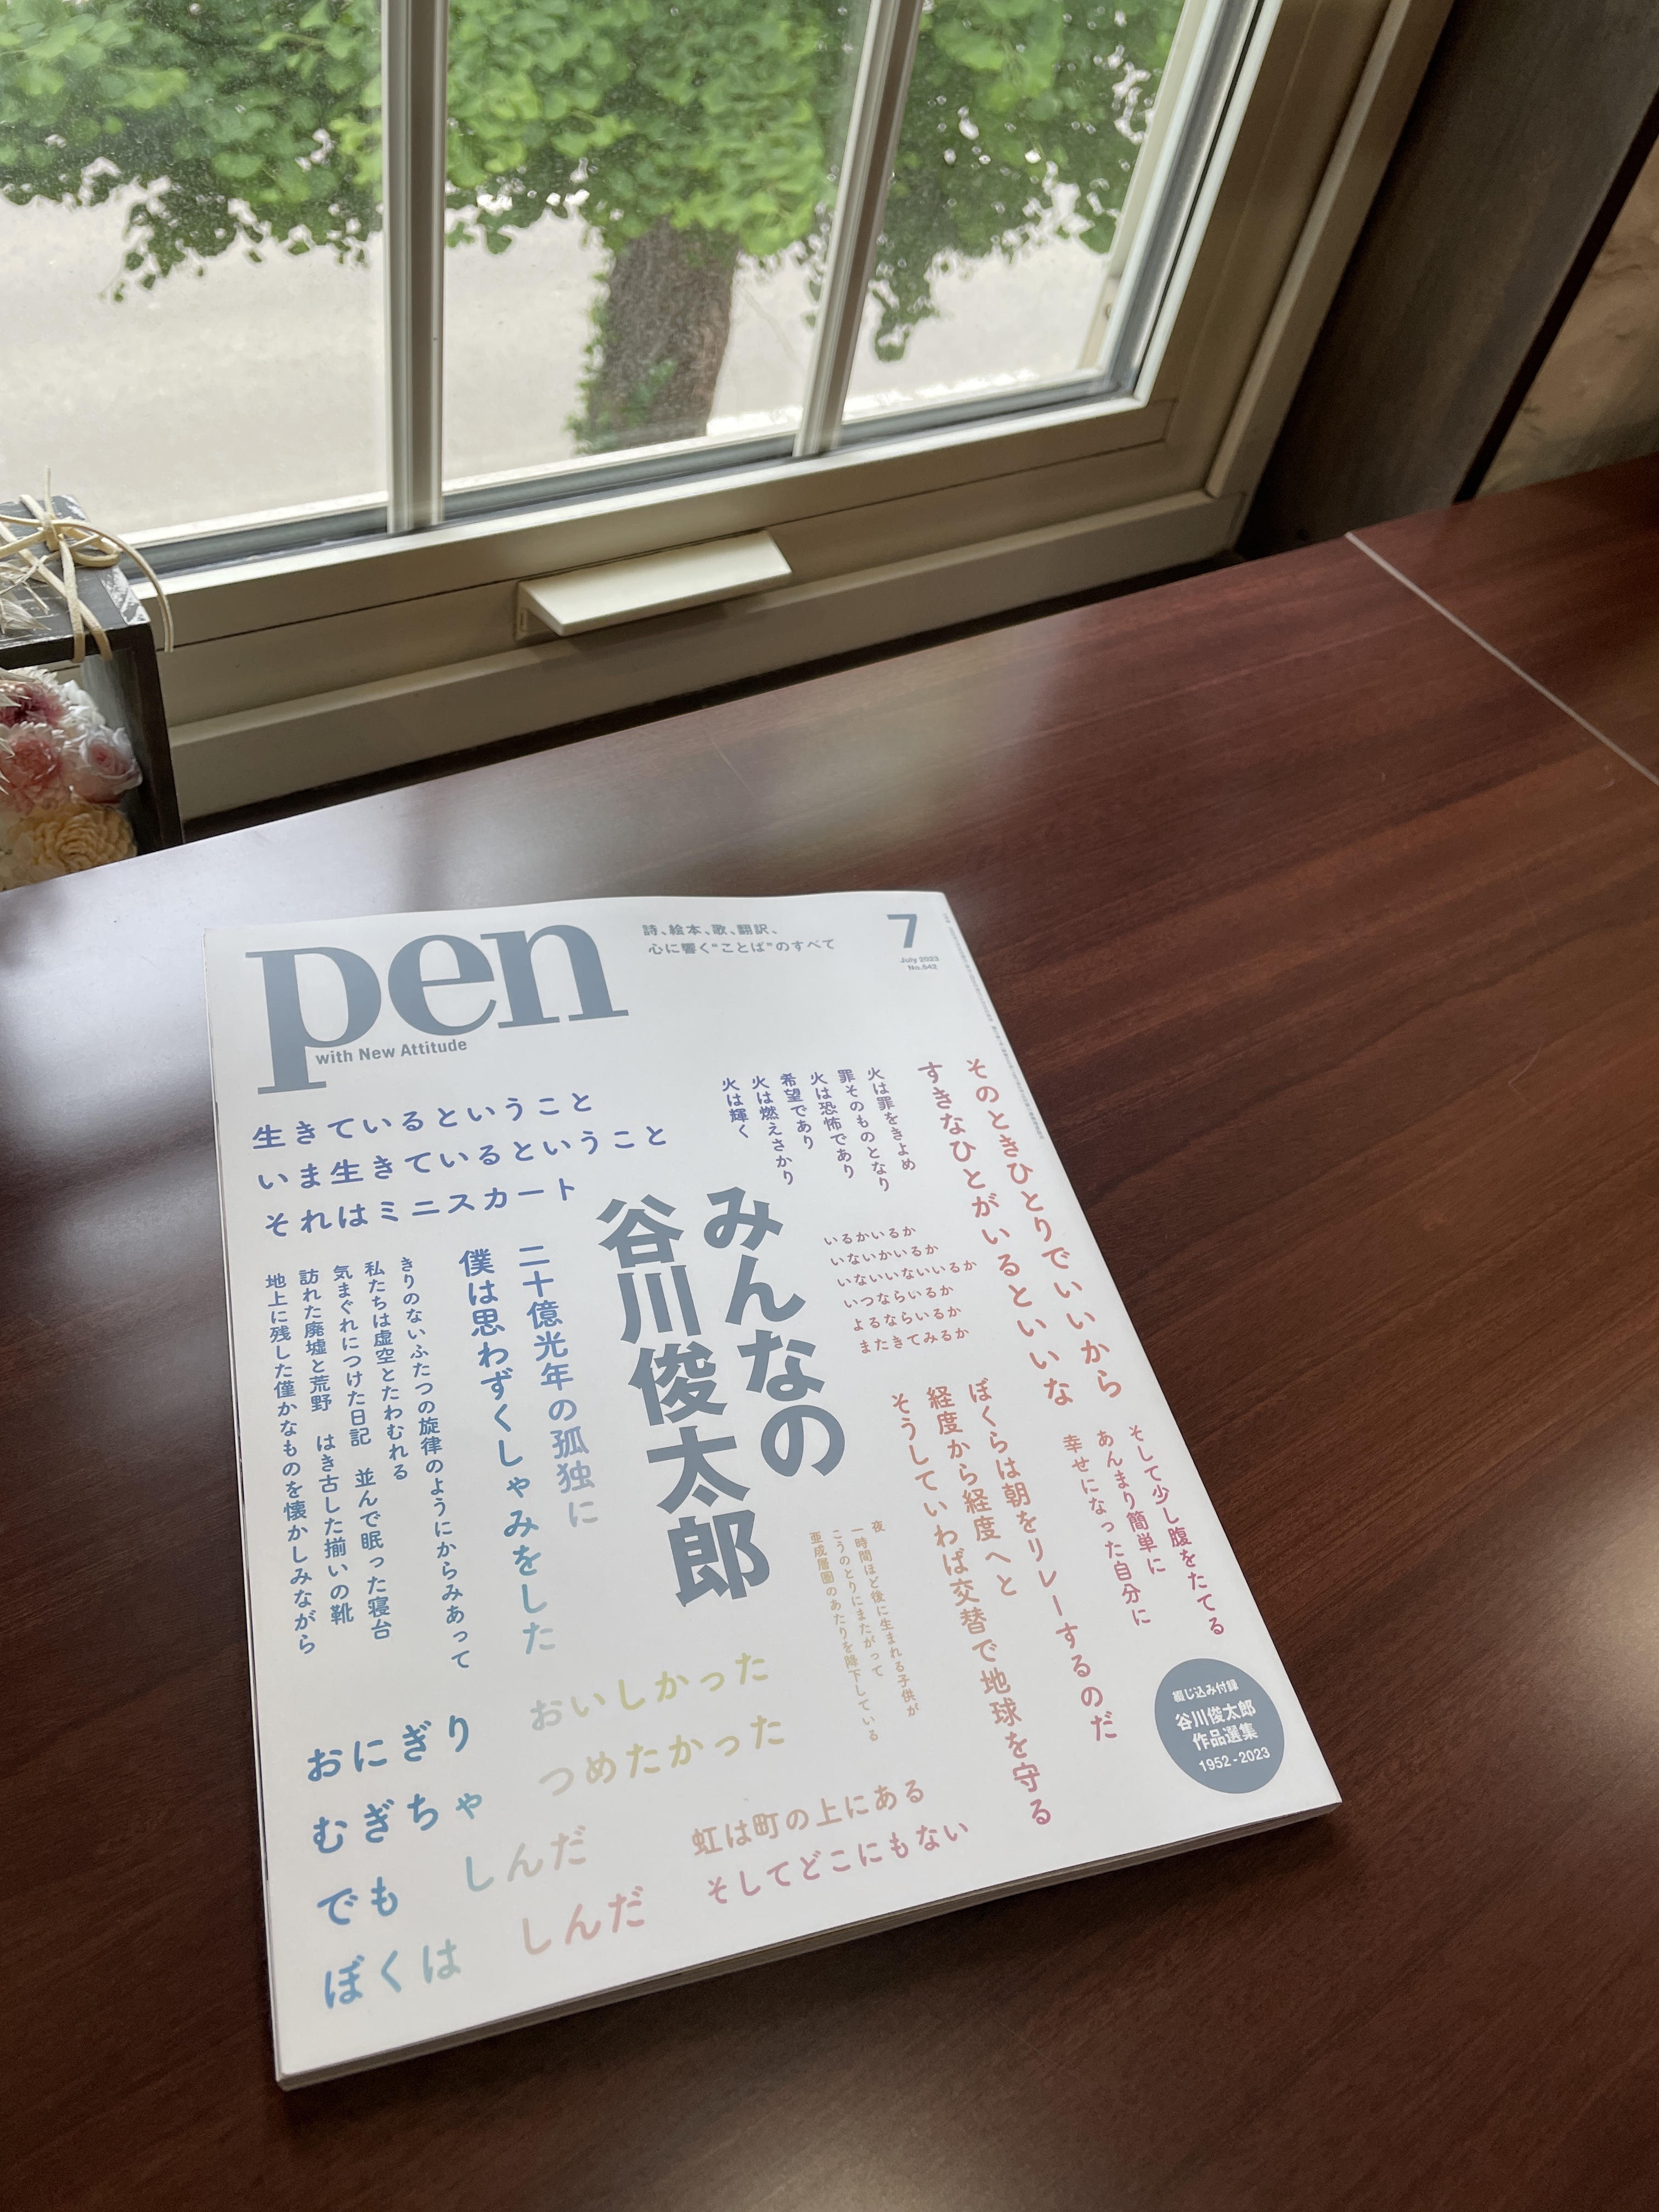 俊太郎さん大特集の雑誌『pen』が入荷しました！